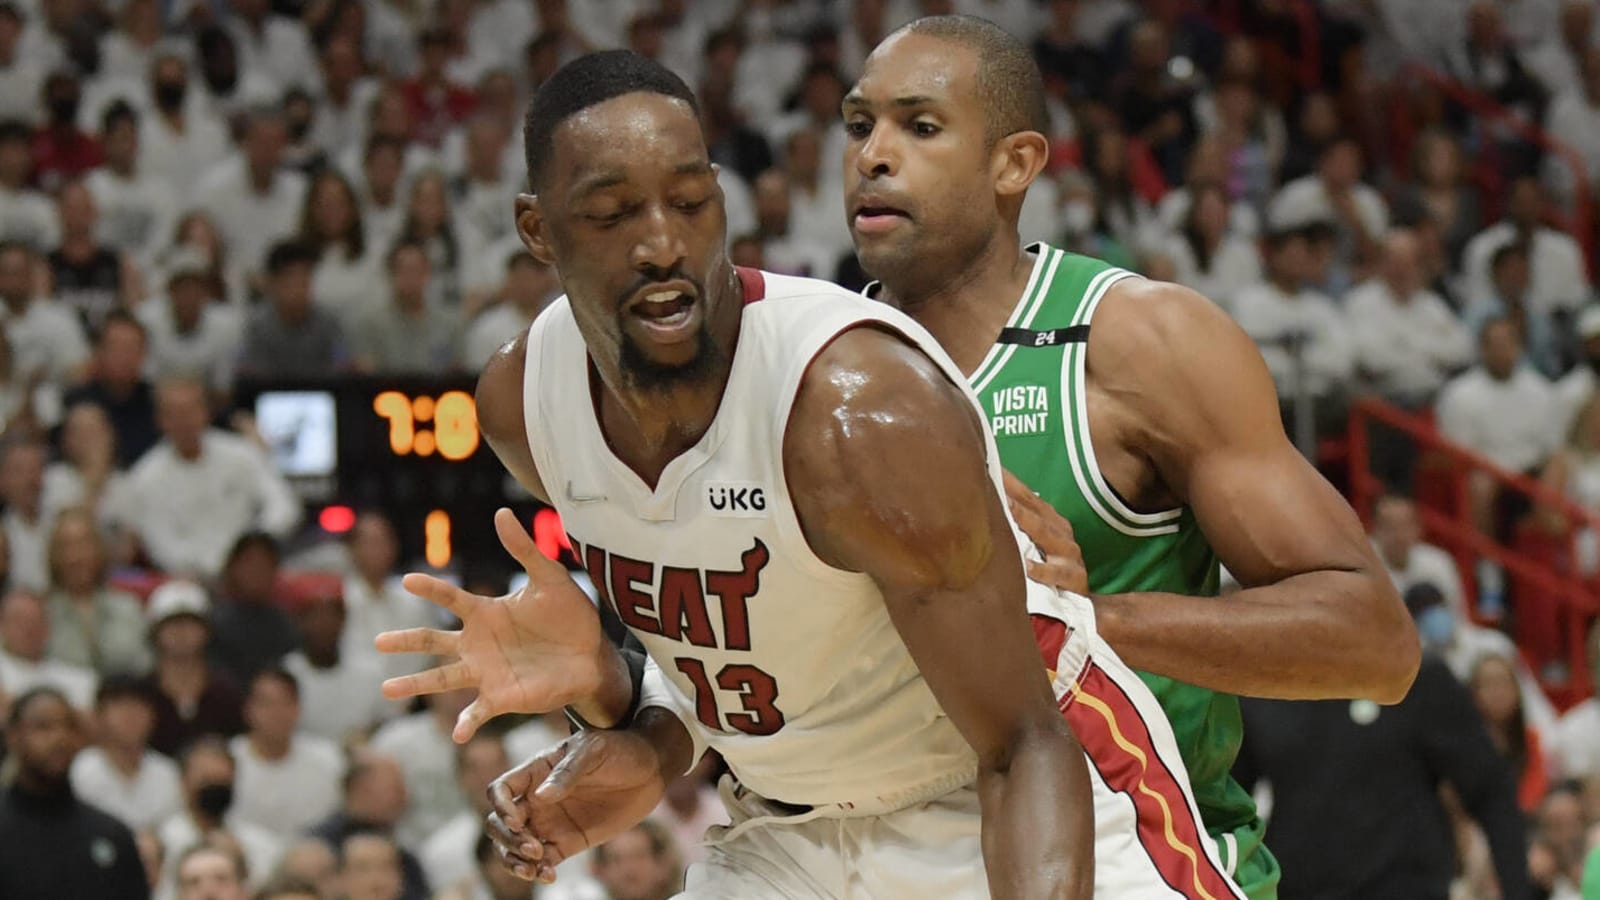 Watch: Celtics' Horford stuffs Heat's Strus on dunk attempt